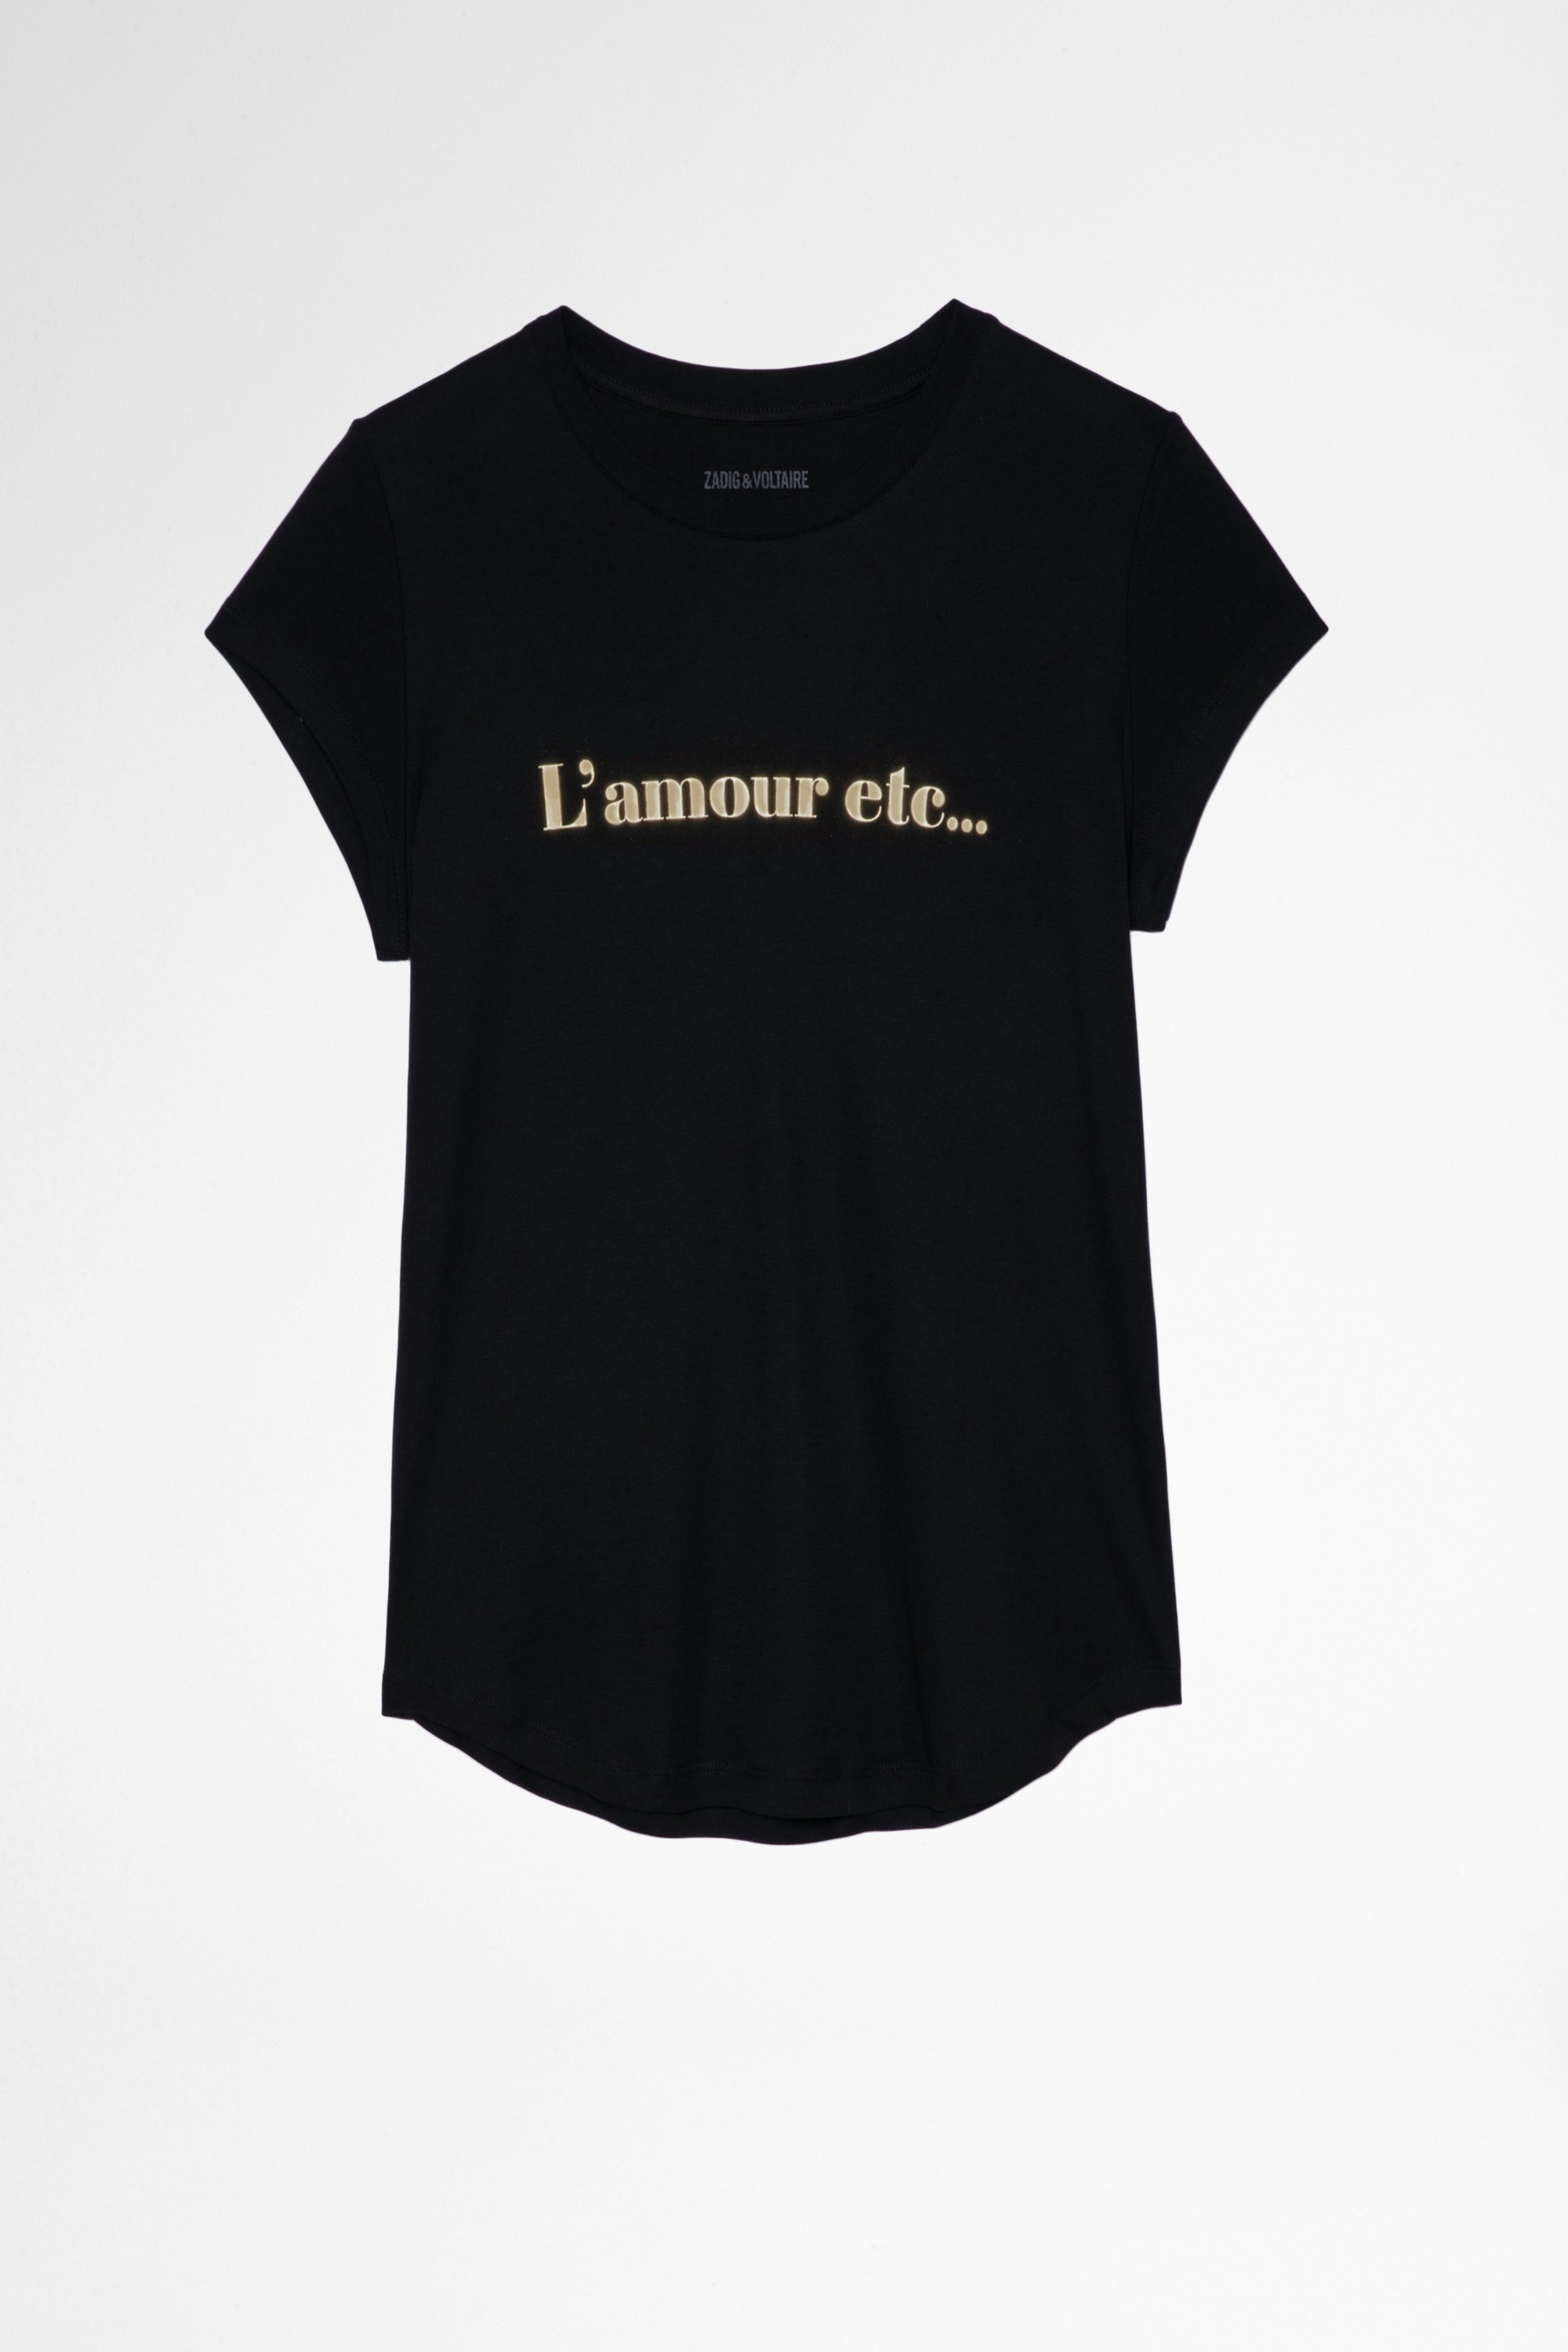 T-Shirt Woop L'amour etc T-shirt con stampa “L'amour etc…” in cotone bianca, donna. Reallizzato con fibre da agricoltura biologica